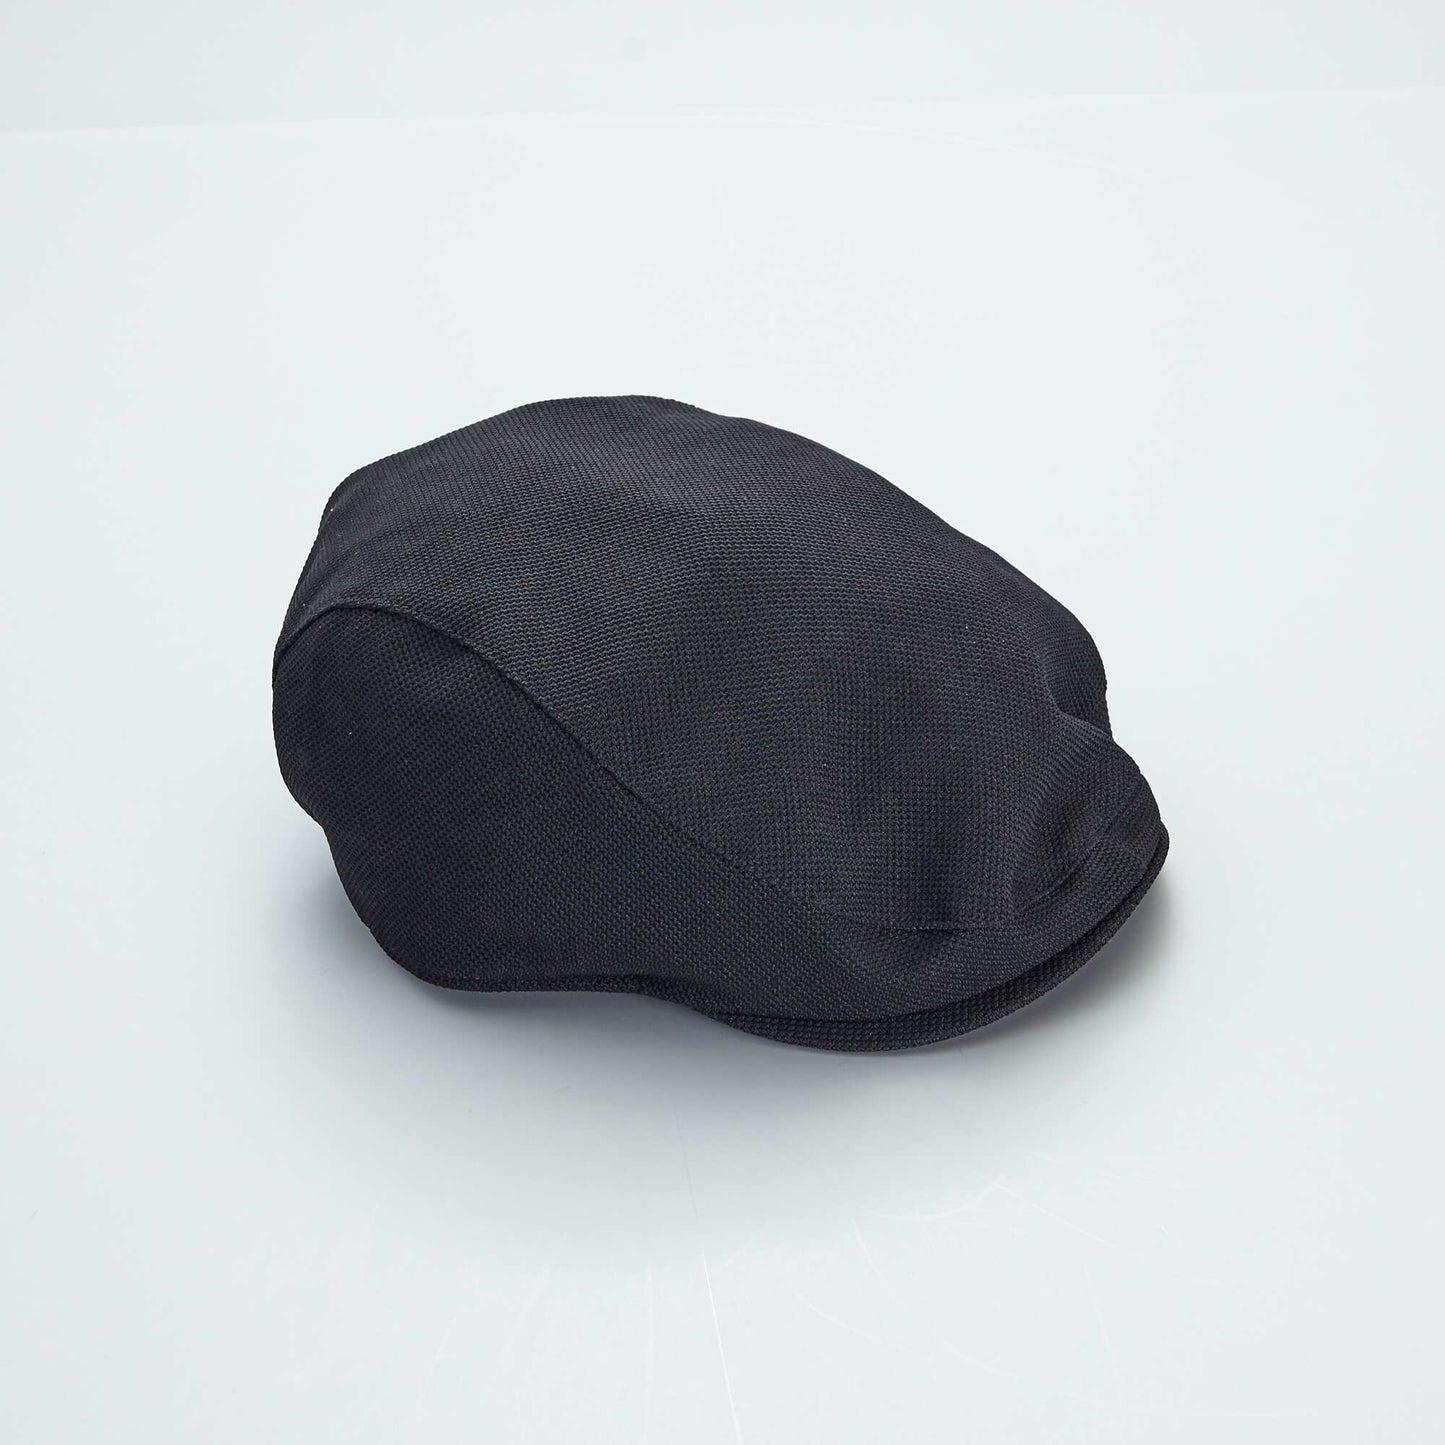 Baker-boy style cap BLACK